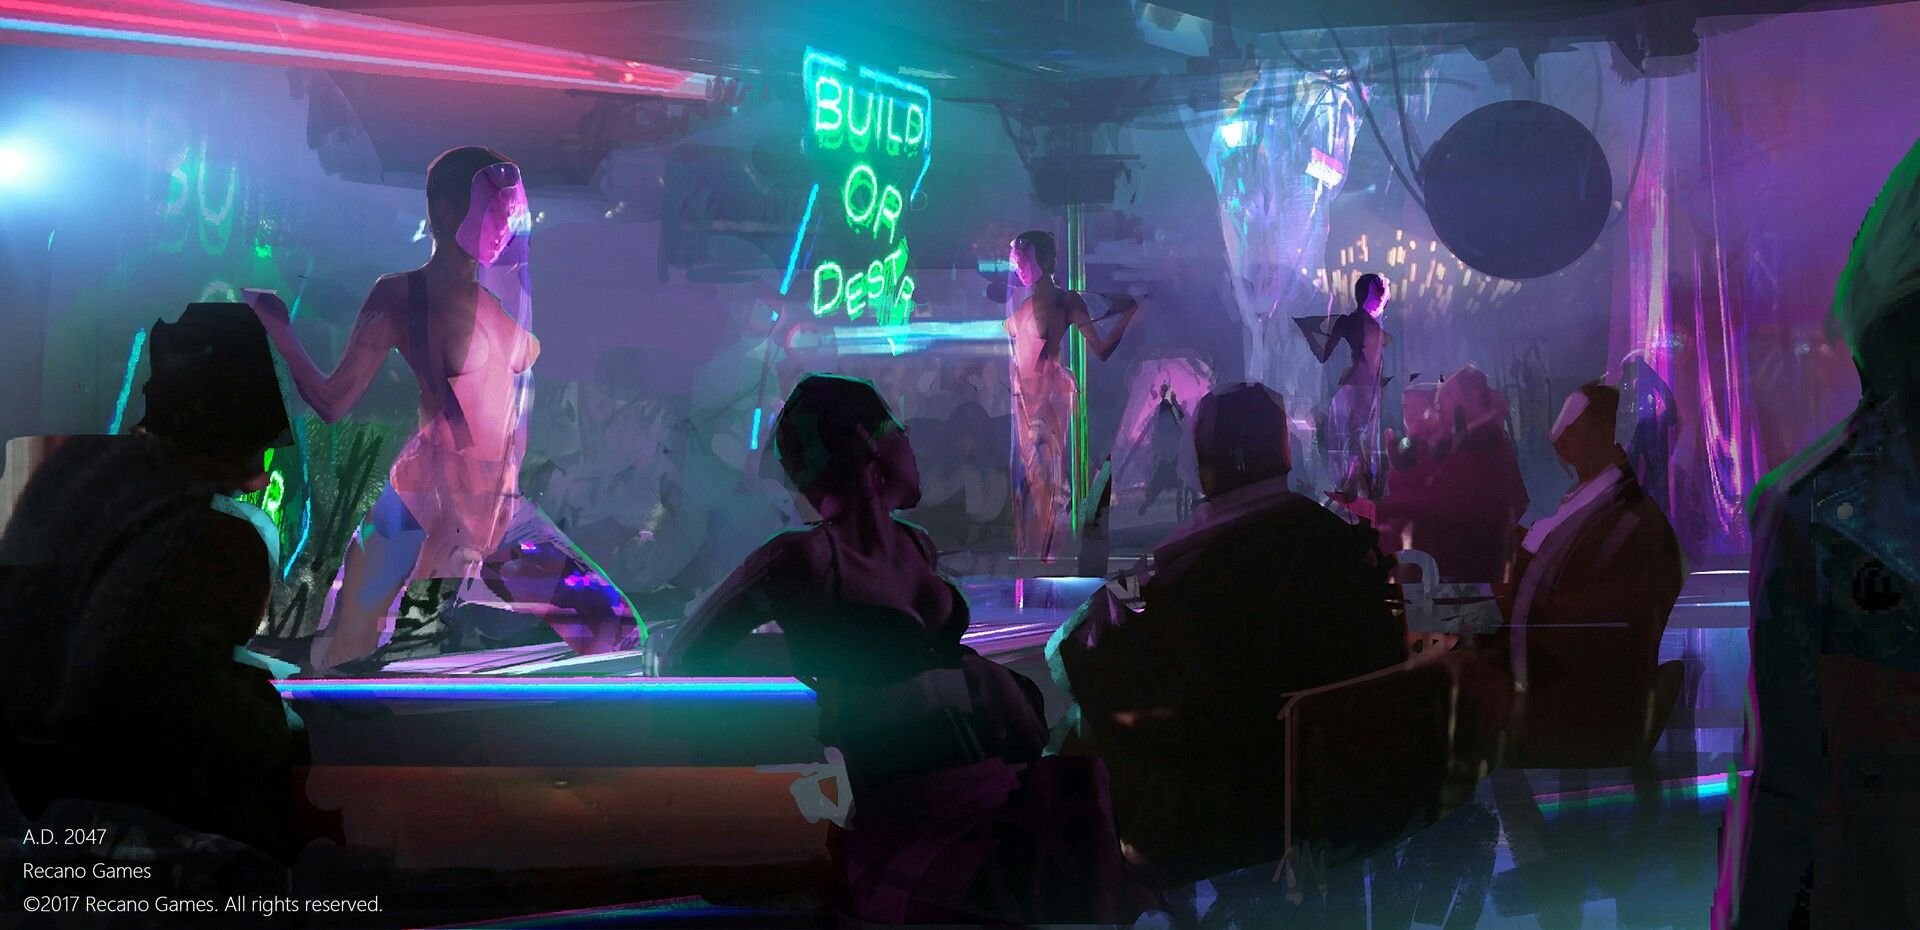 Cyberpunk night club фото 42